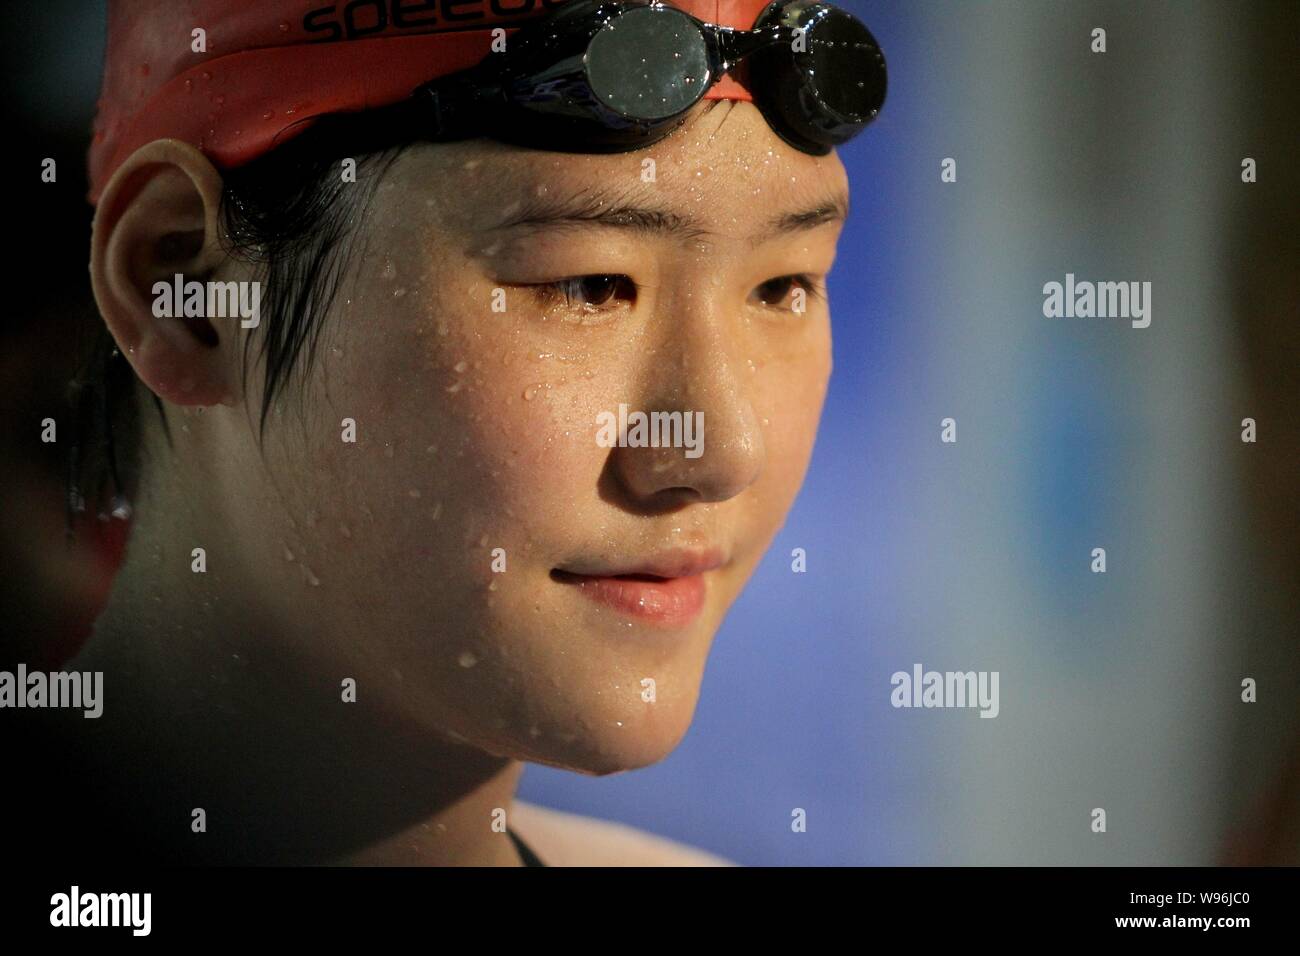 Cinese di nuoto Olympic Champion Ye Shiwen viene intervistato dopo la finale di womens 50m evento freestyle durante il 2012 nazionale cinese di nuoto Foto Stock